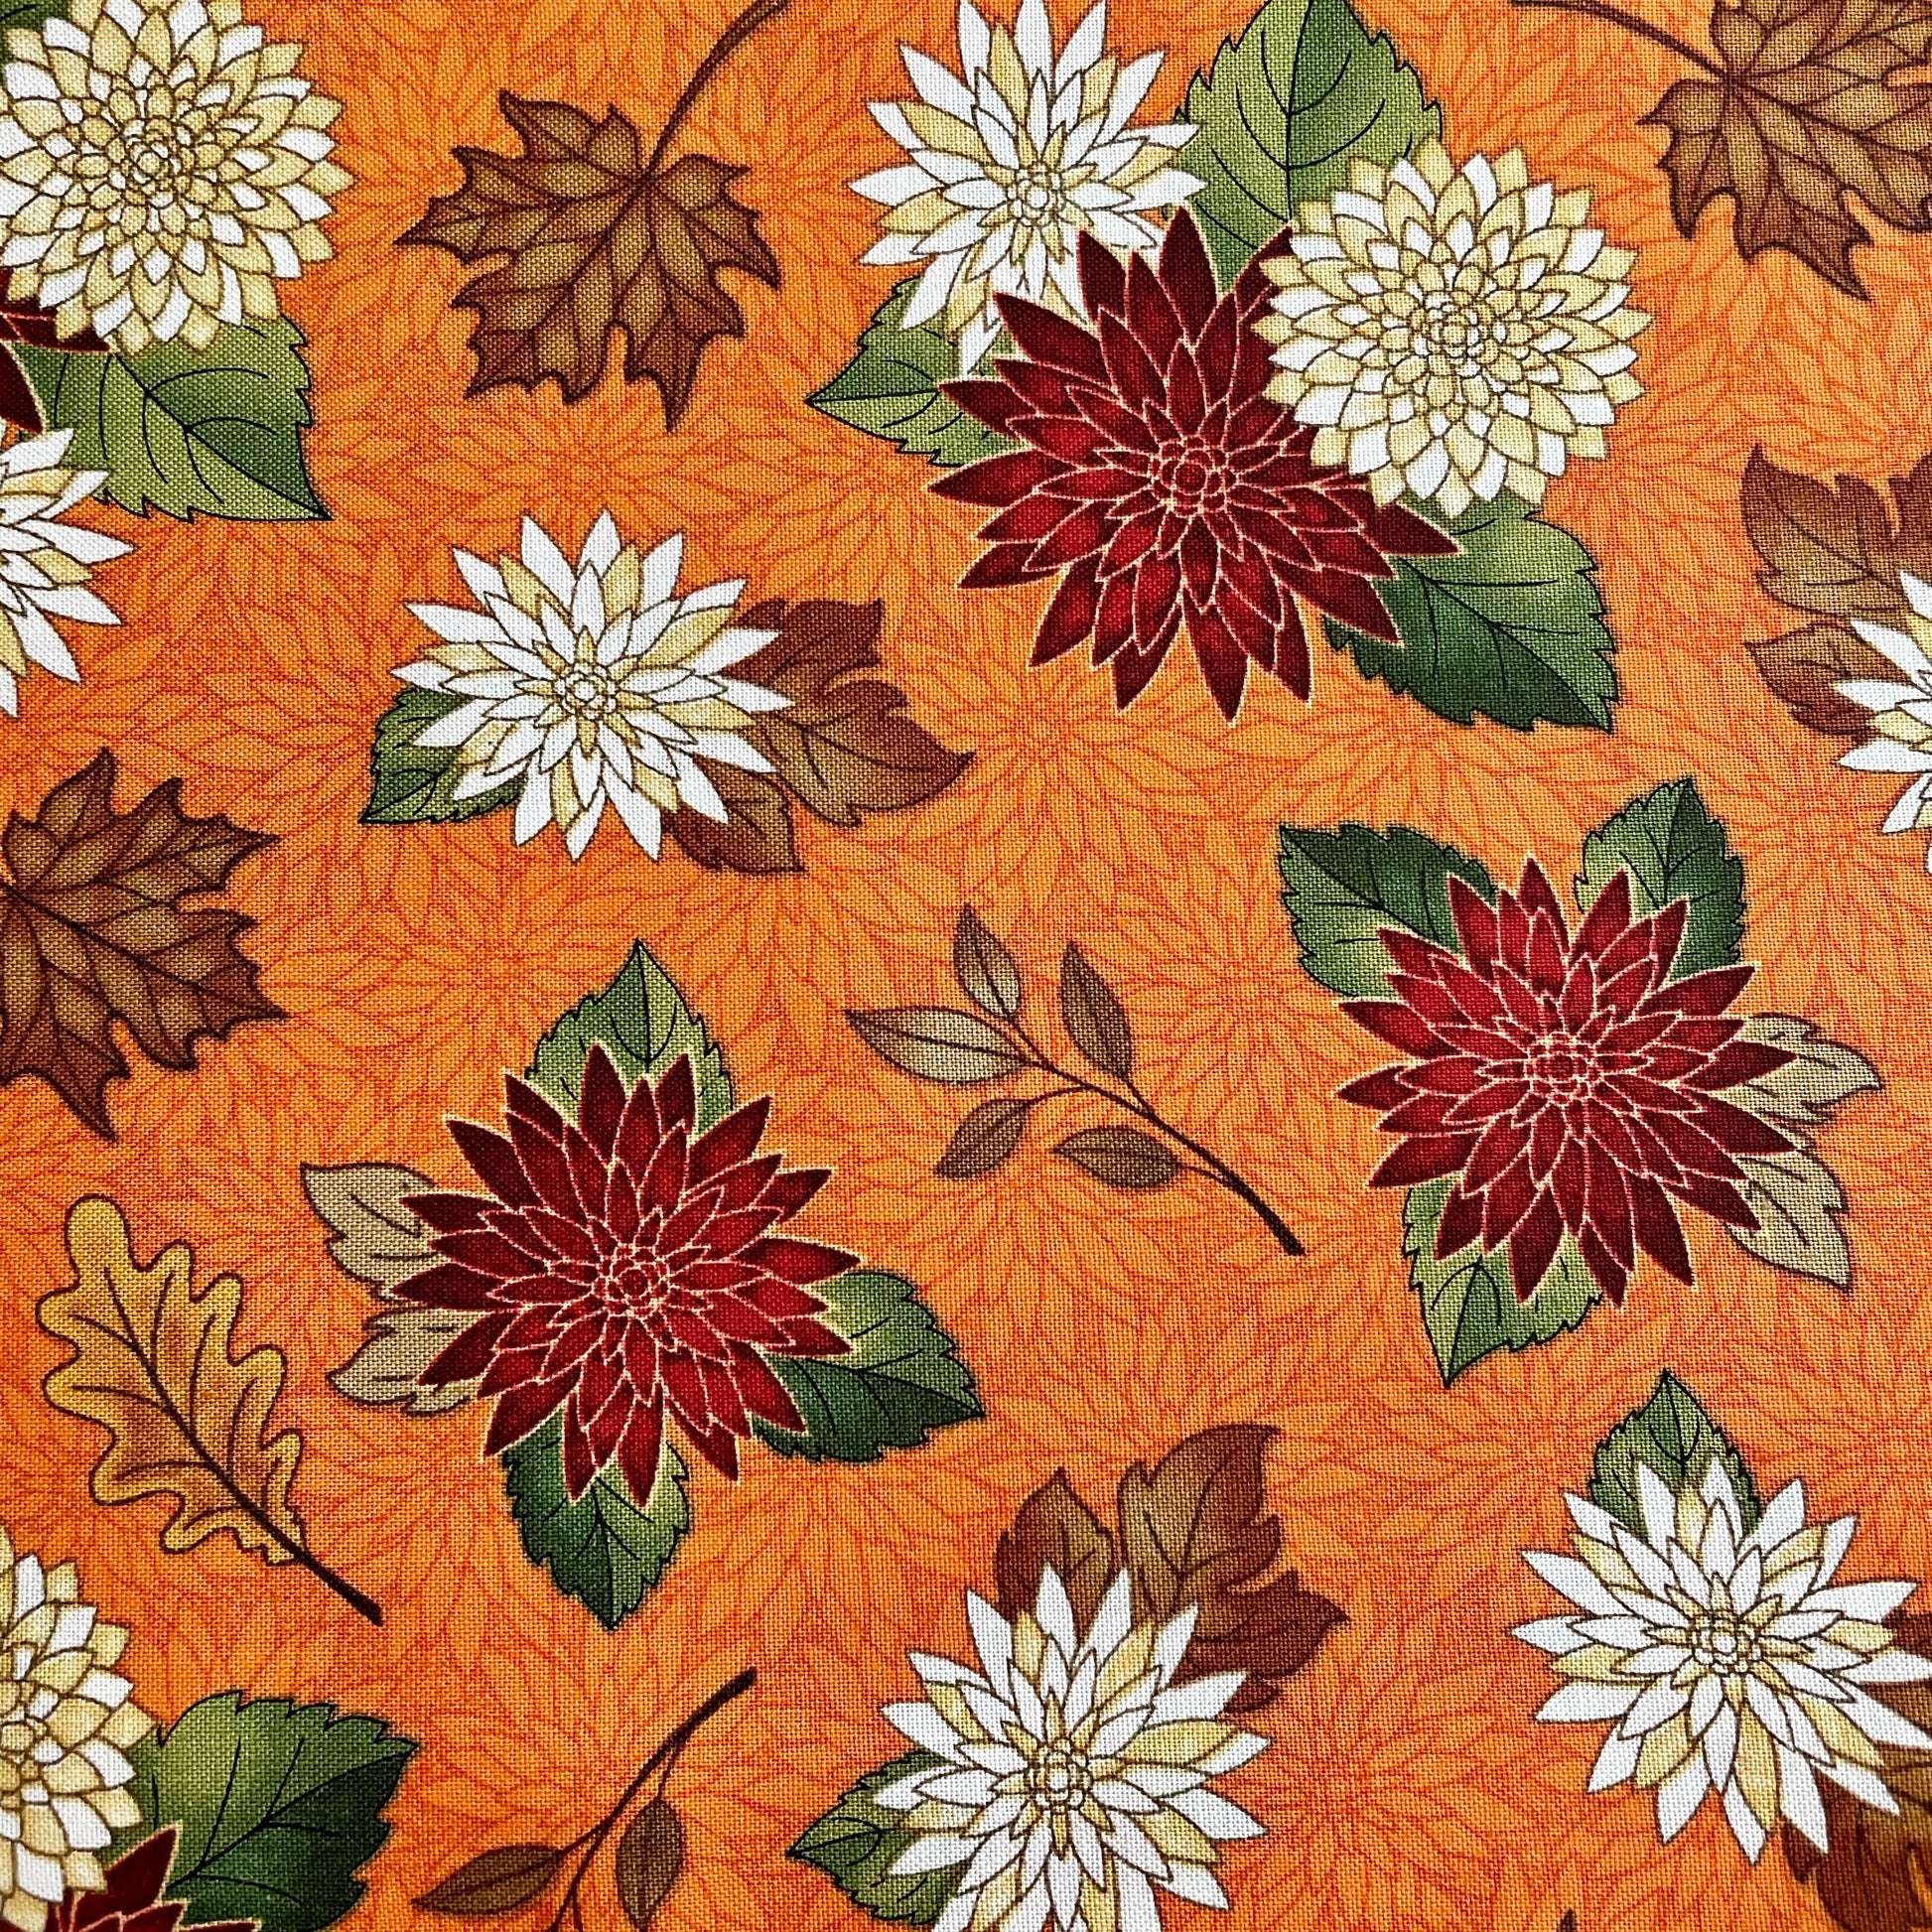 Stand Mixer Slider Mat - Floral Garden – Dalisay Design Fabrics